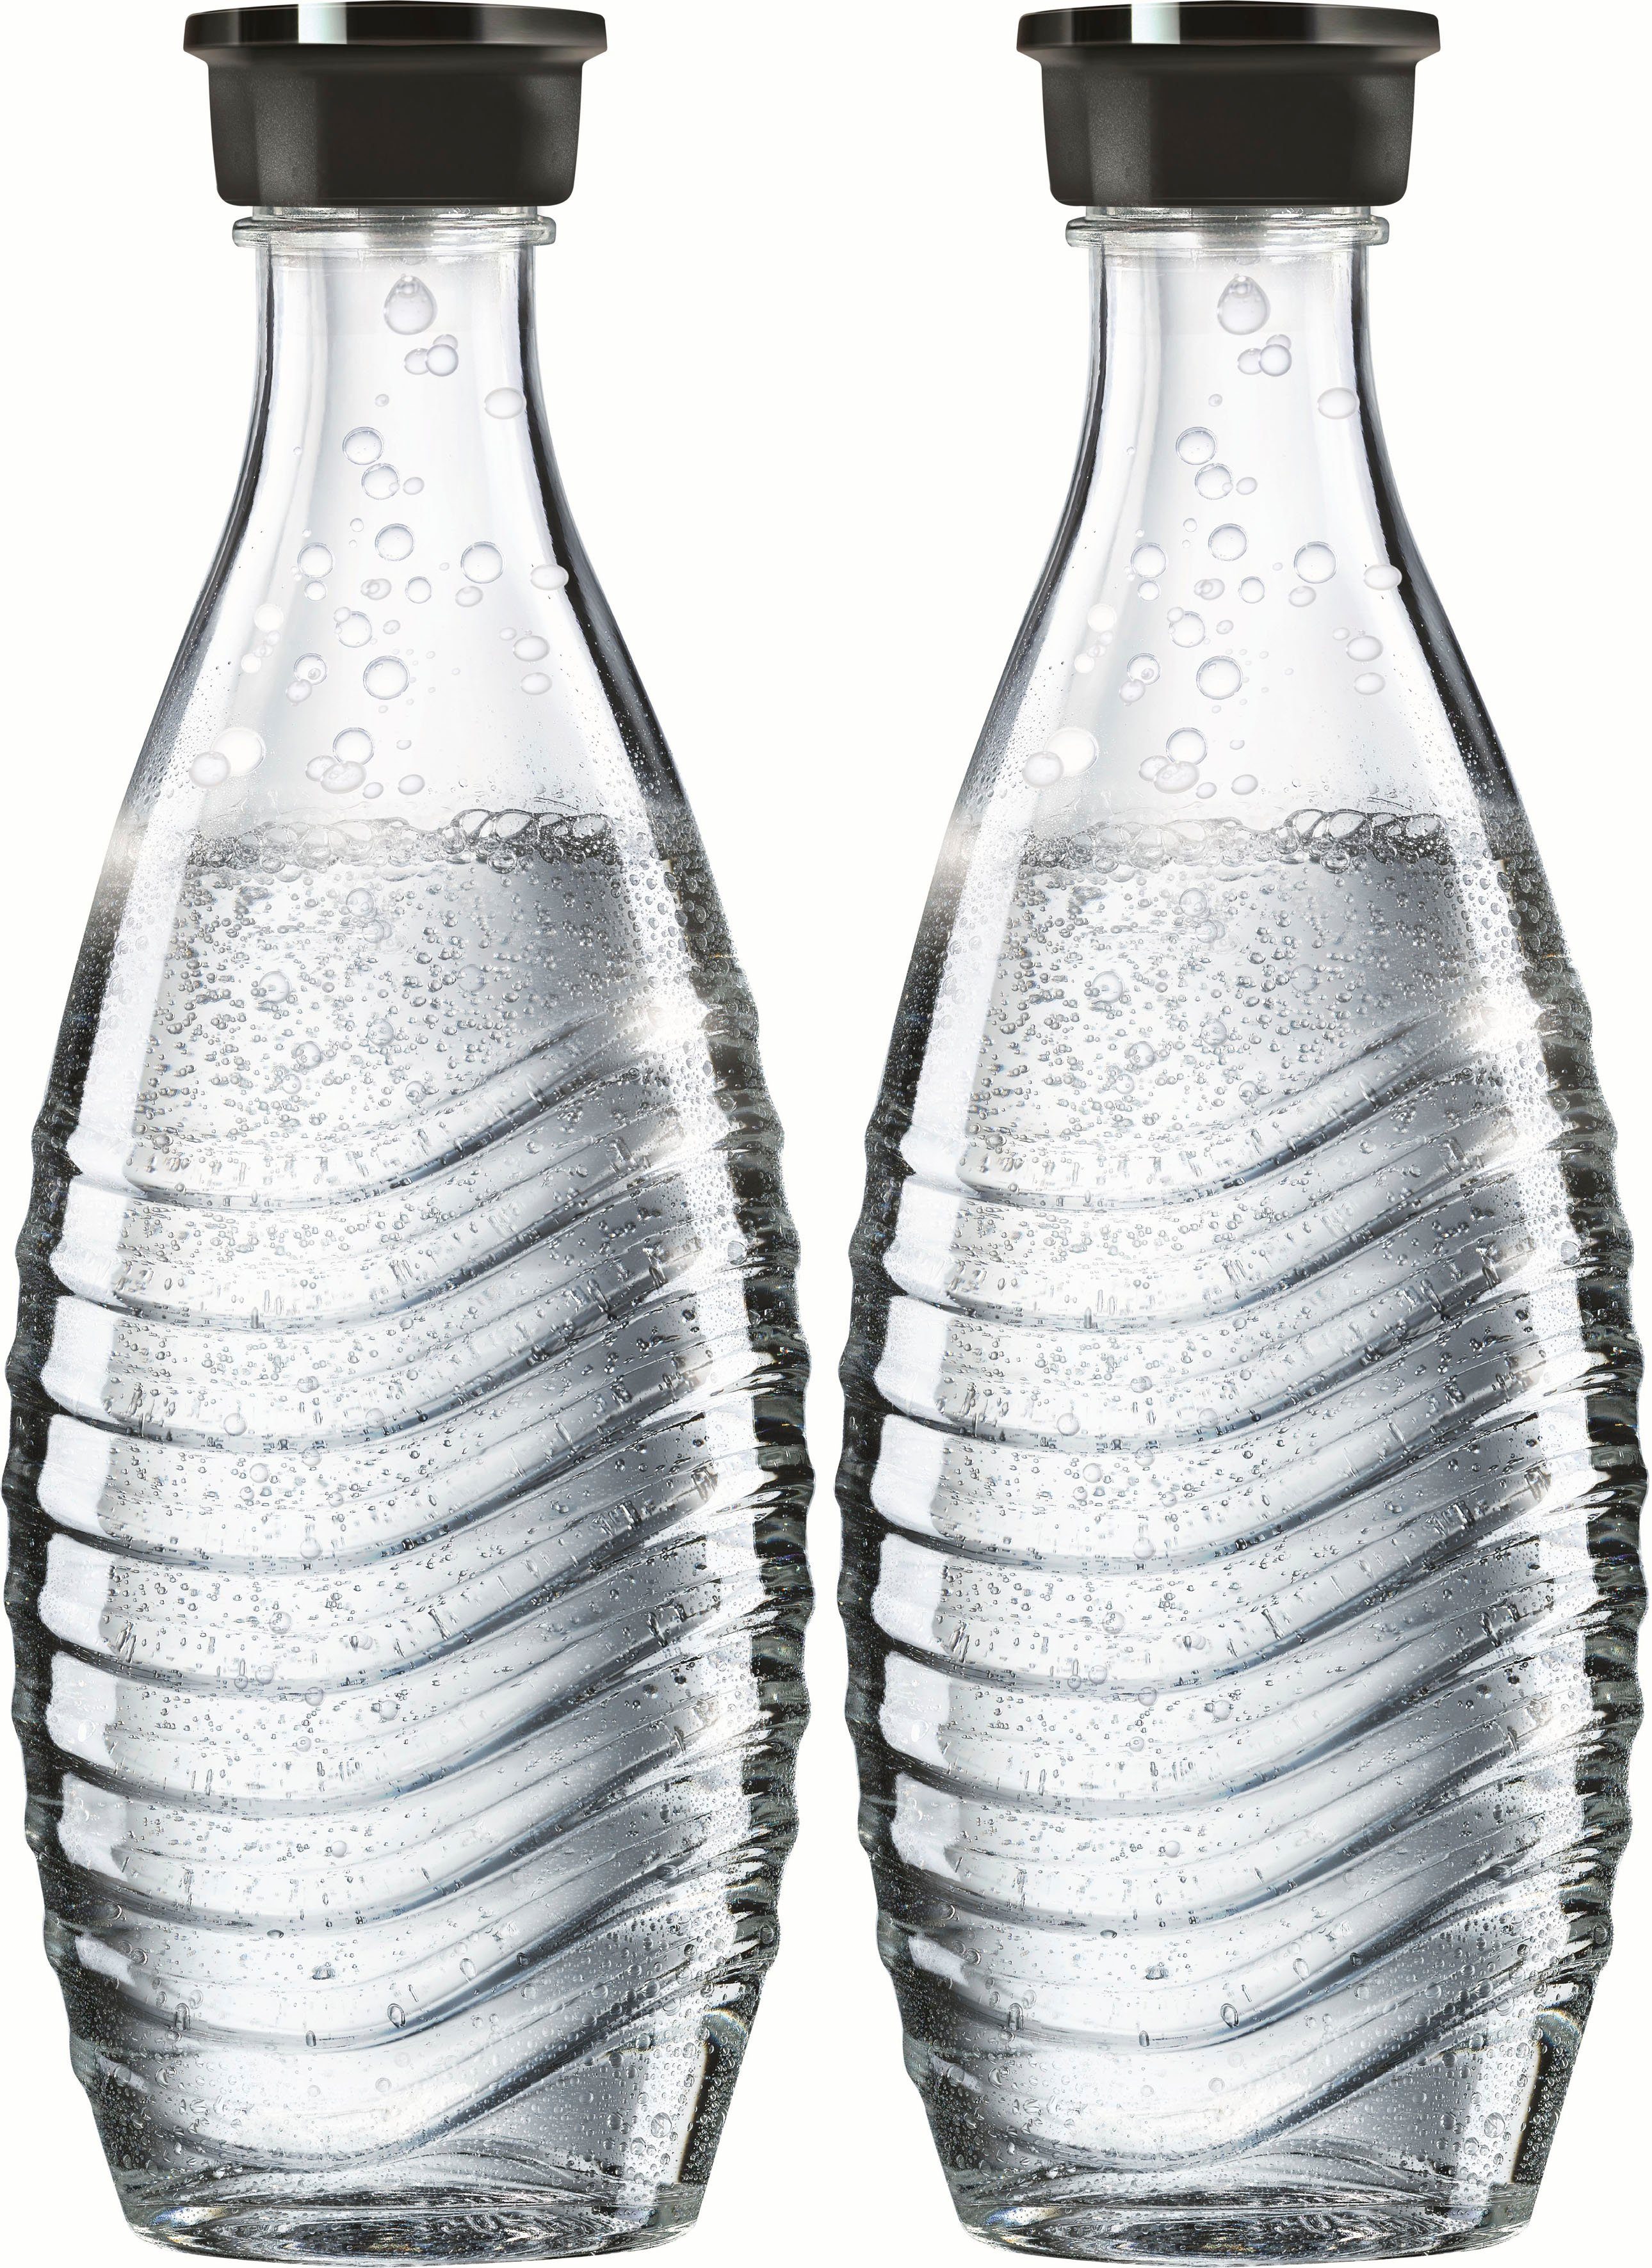 Wassersprudler, Abtropfhalter, Wassersprudler CO2-Zyl., SodaStream (7-tlg), »Crystal« Glaskaraffen, Mega-Bundle, Flaschenbürste